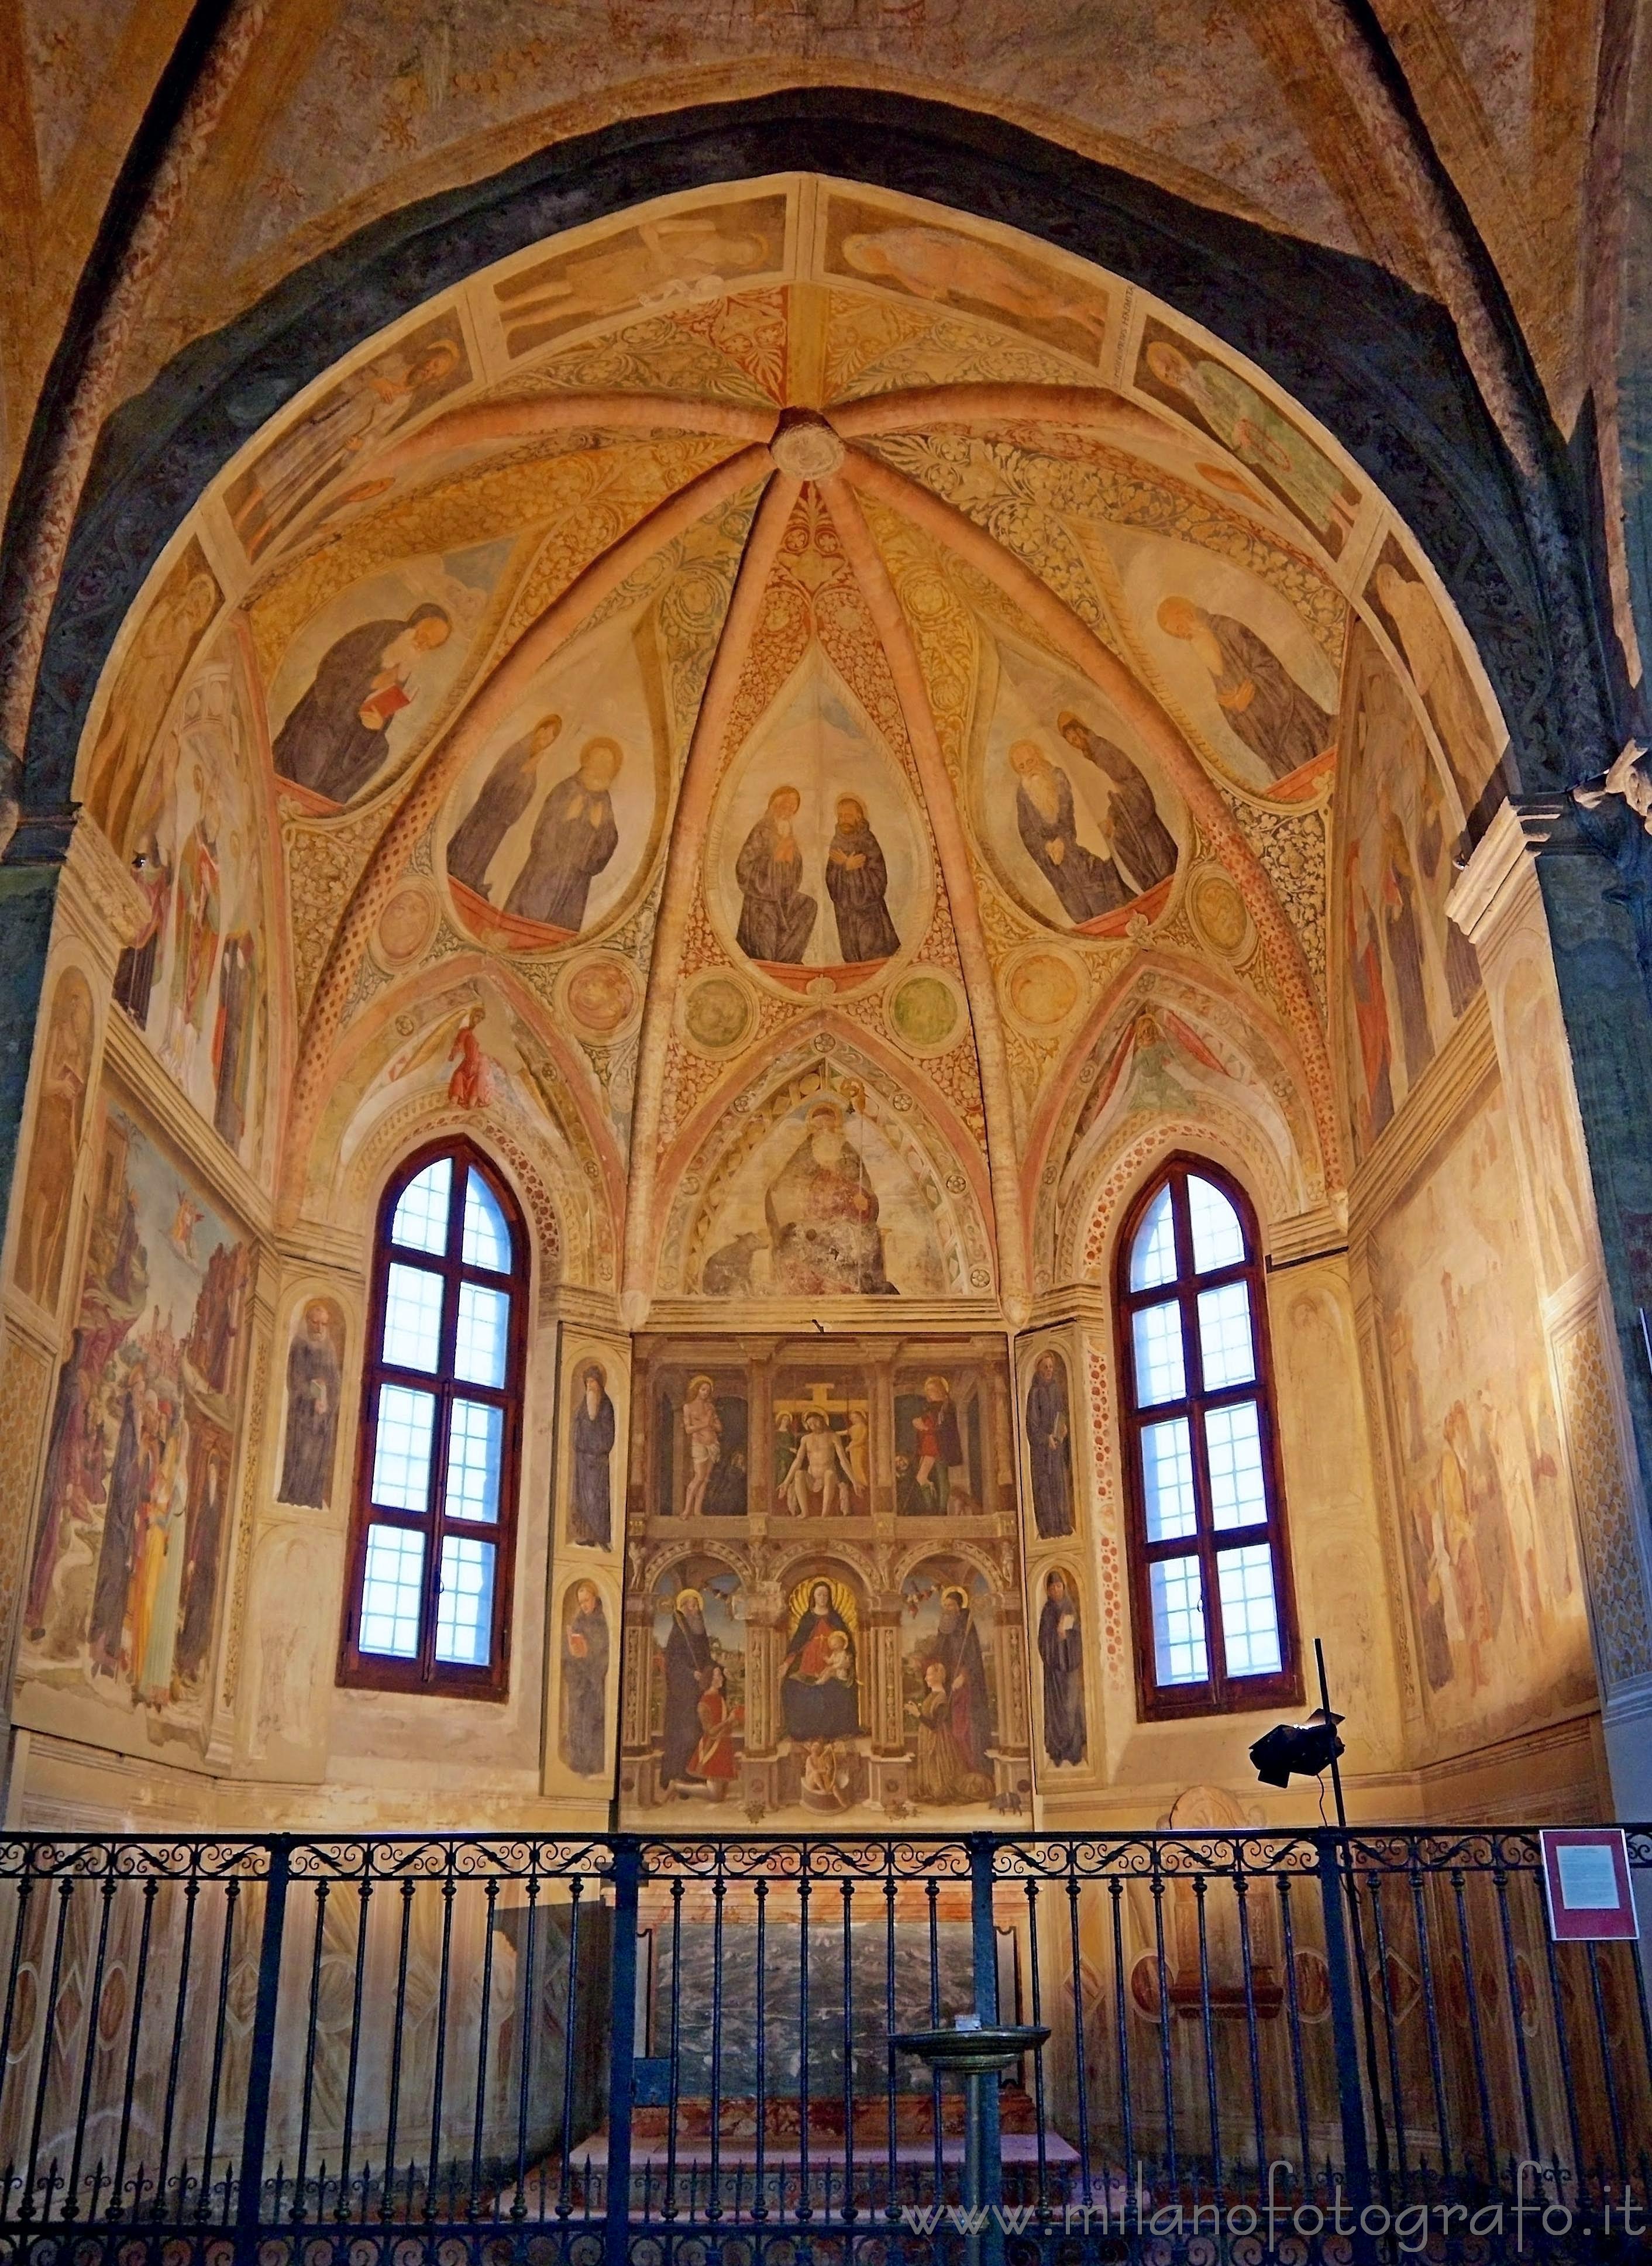 Milano: Cappella di Sant’Antonio Abate, o Cappella Obiano, in San Pietro in Gessate - Milano